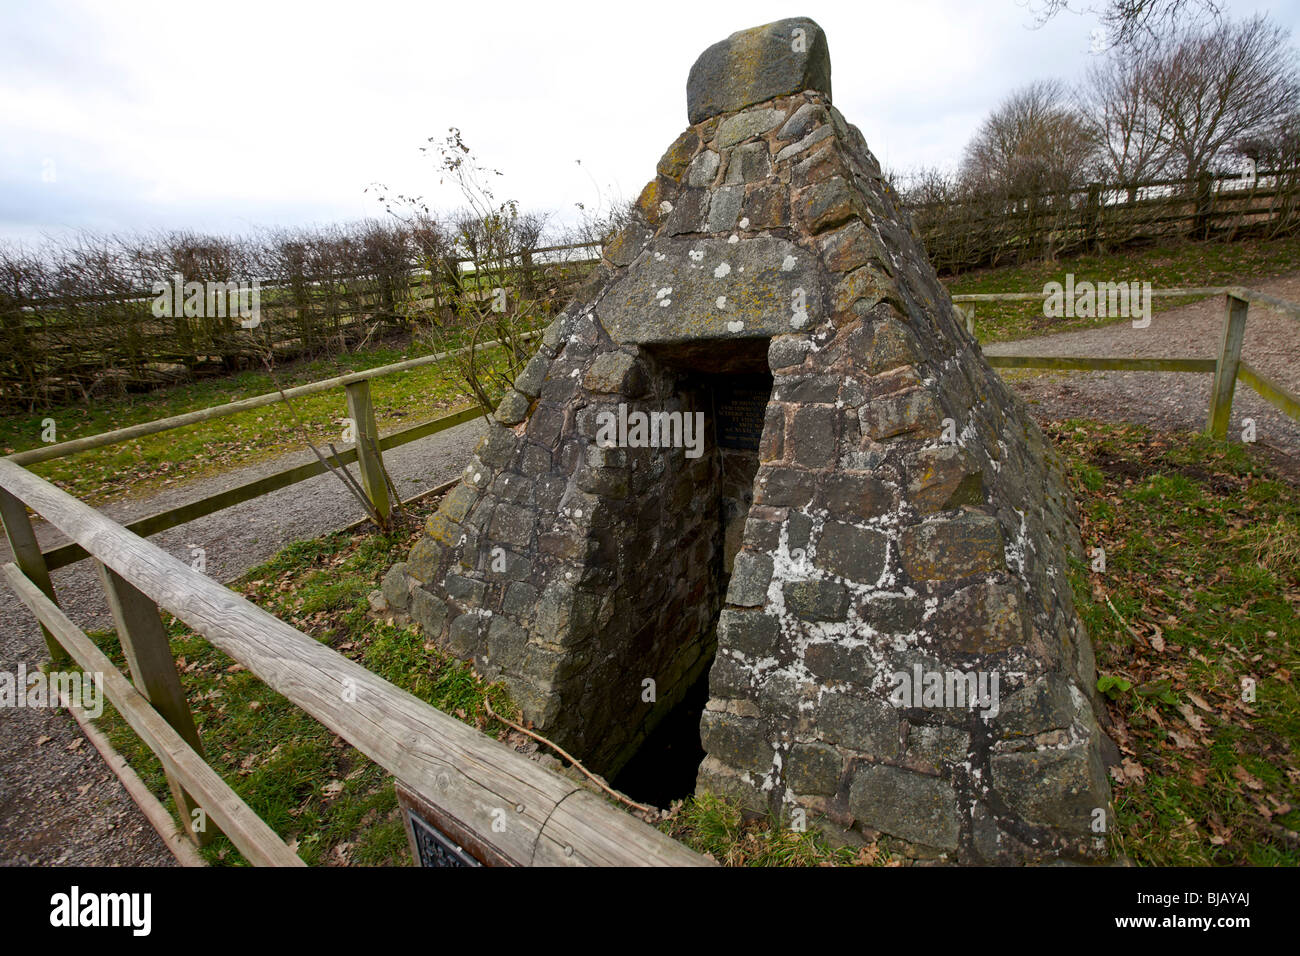 Ein Cairn von Steinen über einen Brunnen gebaut, dass Richard III hieß es aus auf dem Schlachtfeld von Bosworth 1485 getrunken haben Stockfoto